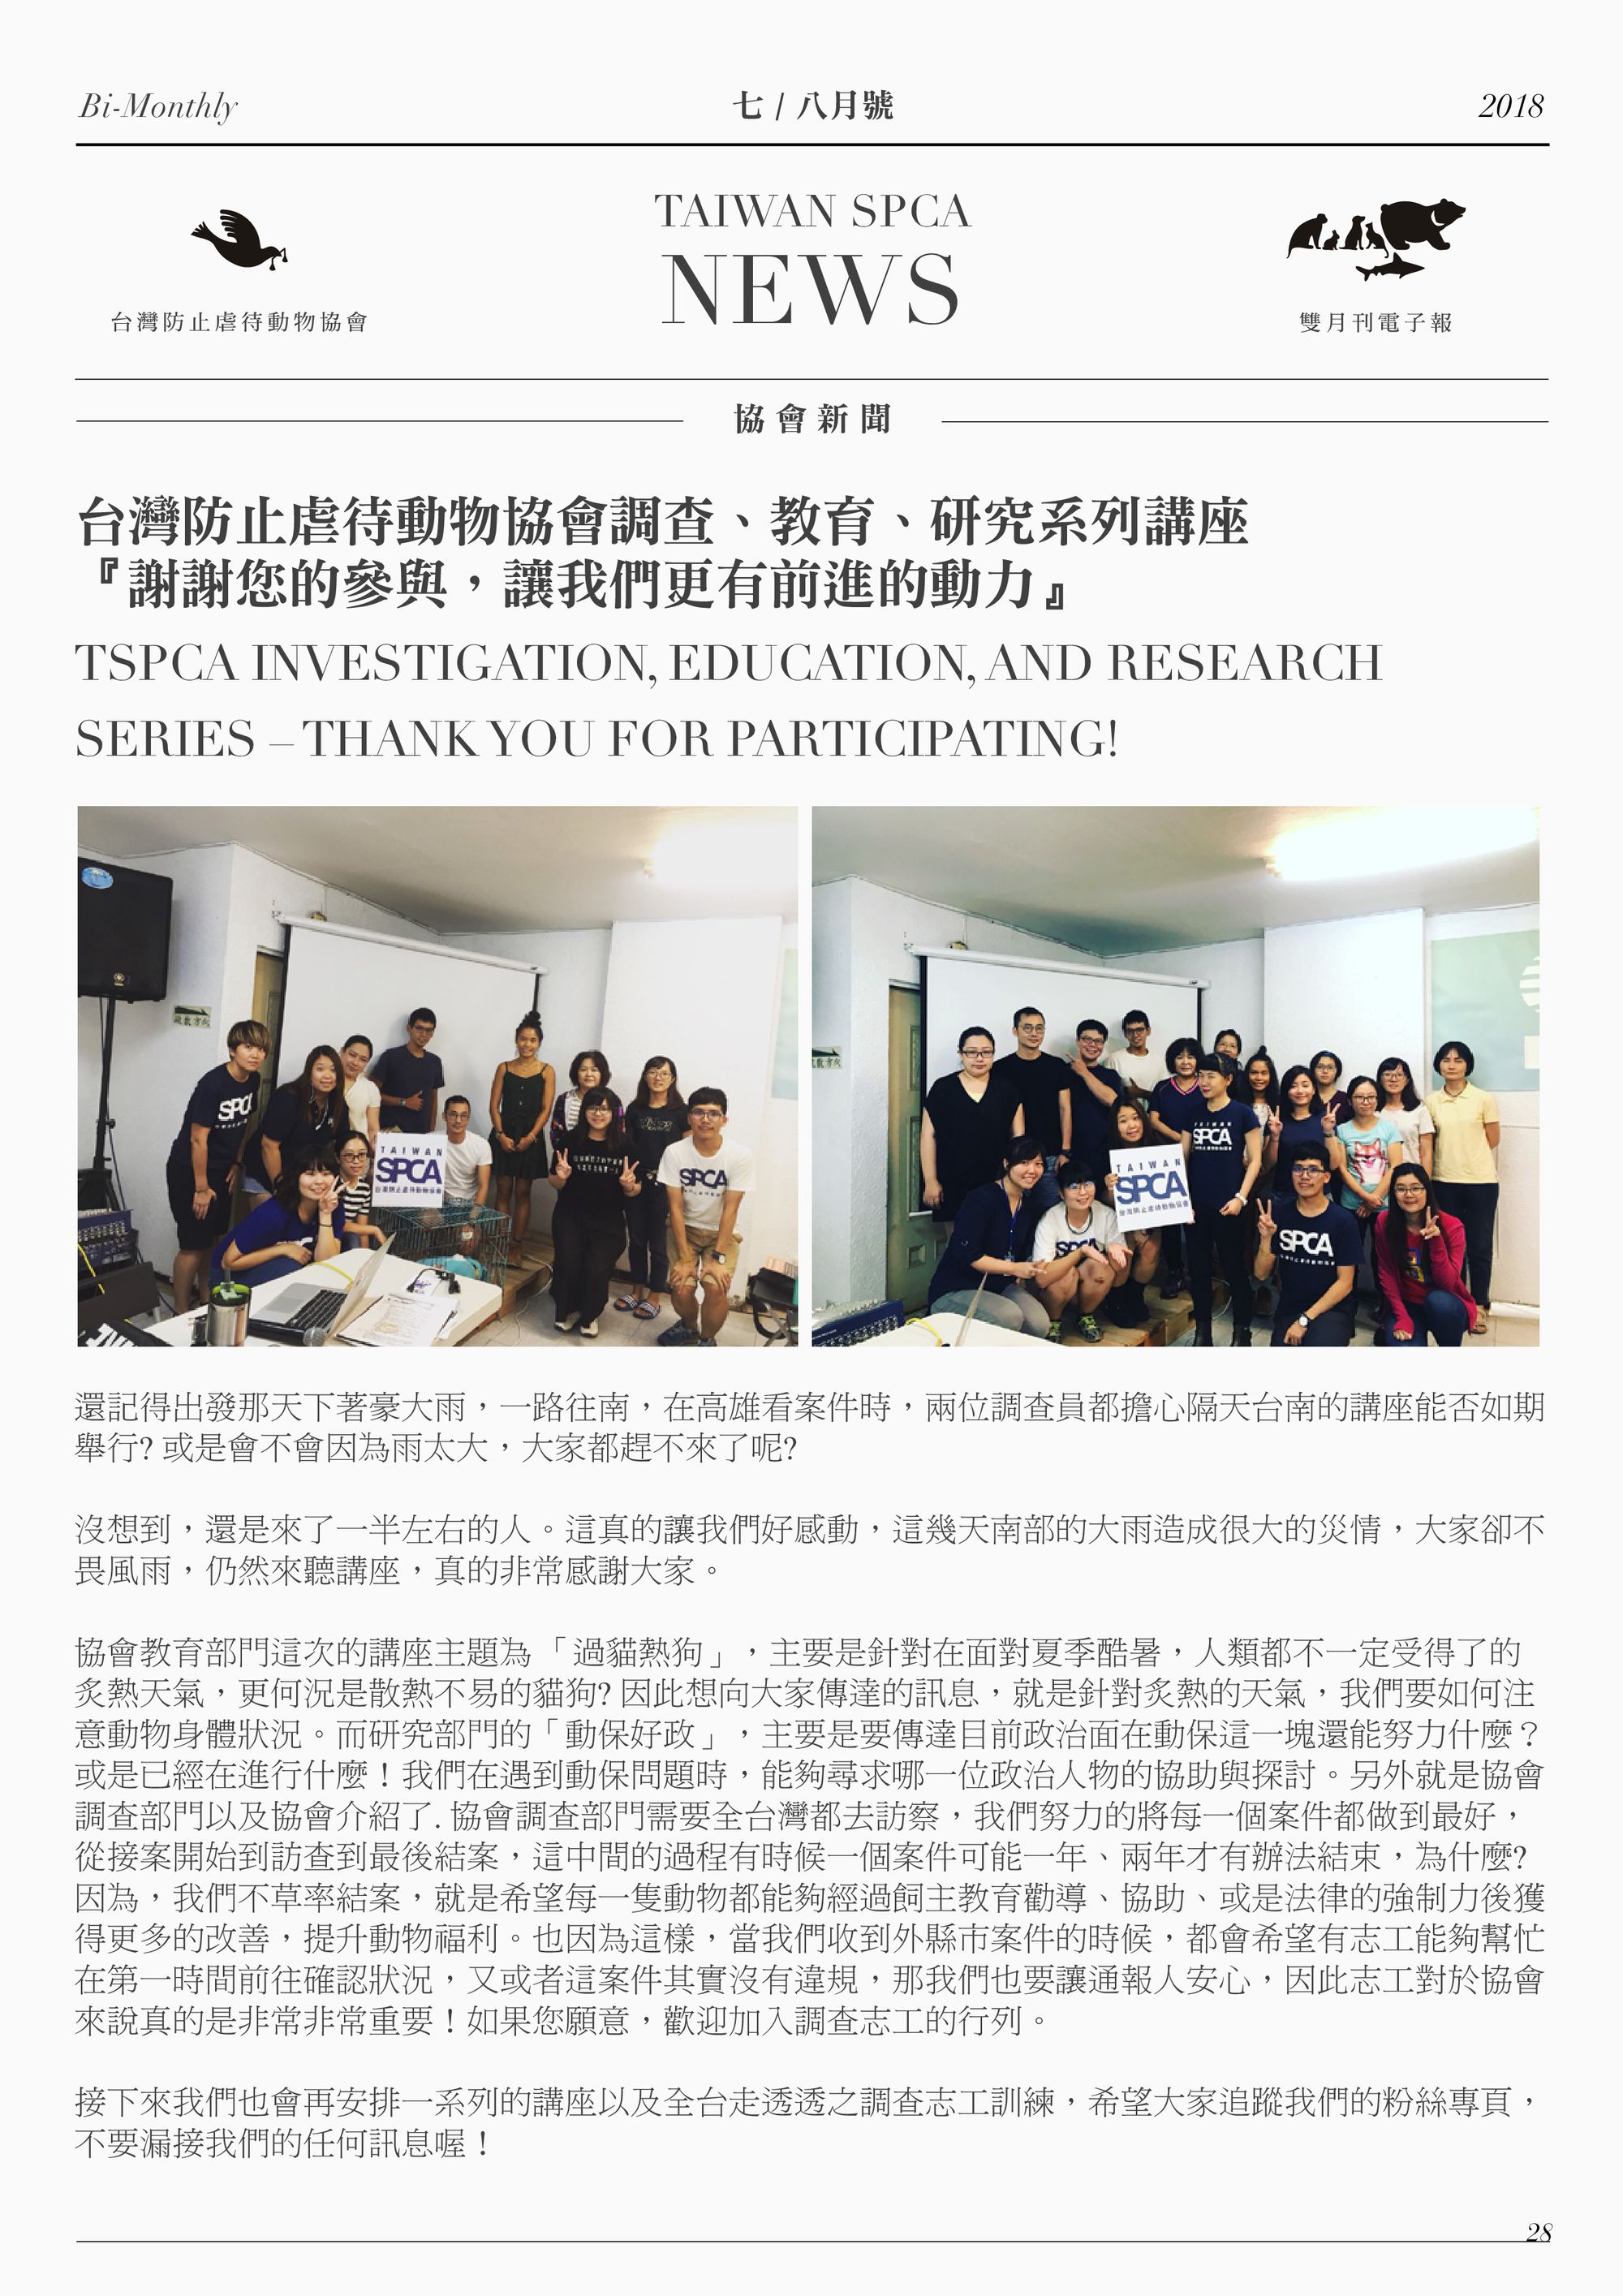 台灣防止虐待動物協會調查、教育、研究系列講座 『謝謝您的參與，讓我們更有前進的動力』